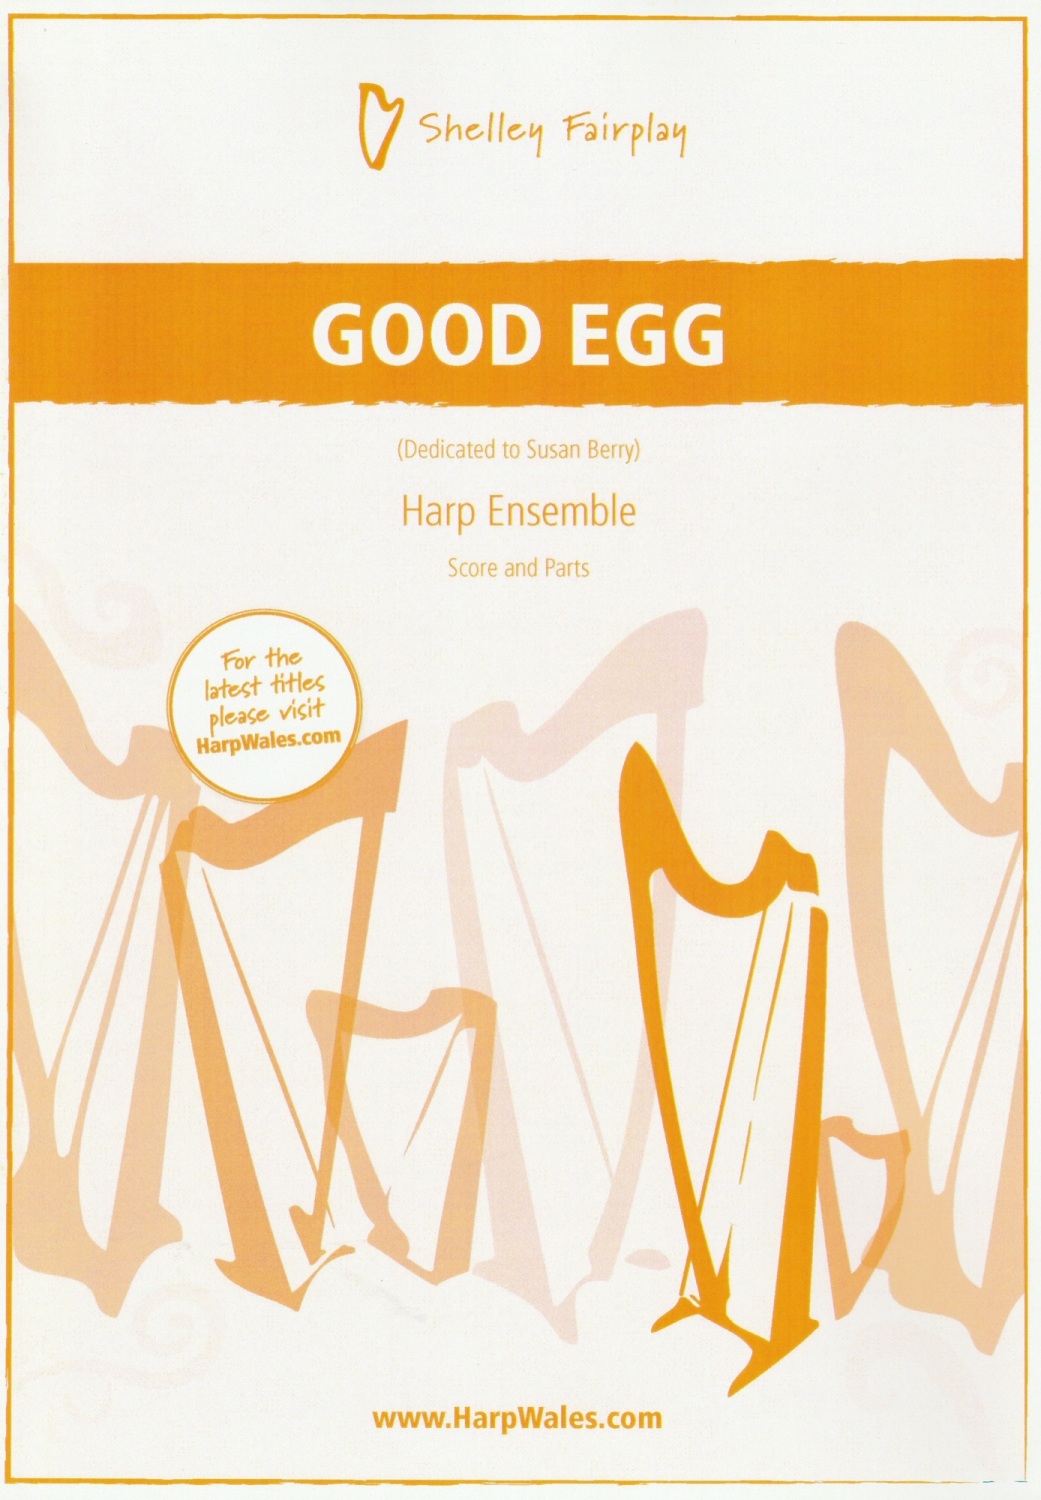 Good Egg - Shelley Fairplay